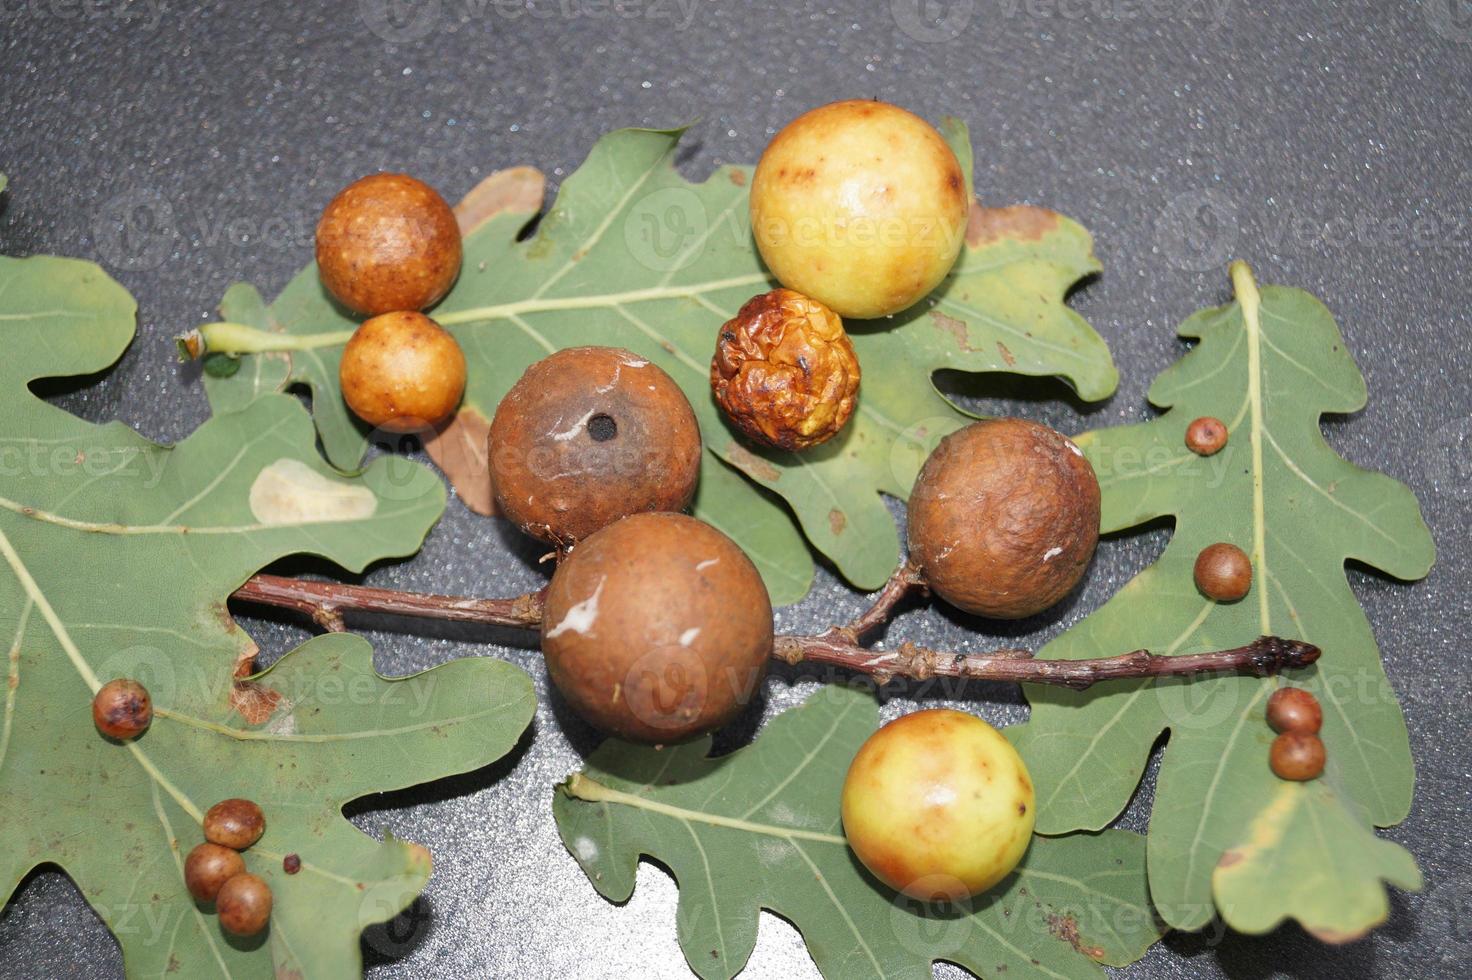 cynips quercusfolii gall balls on oak leaf photo